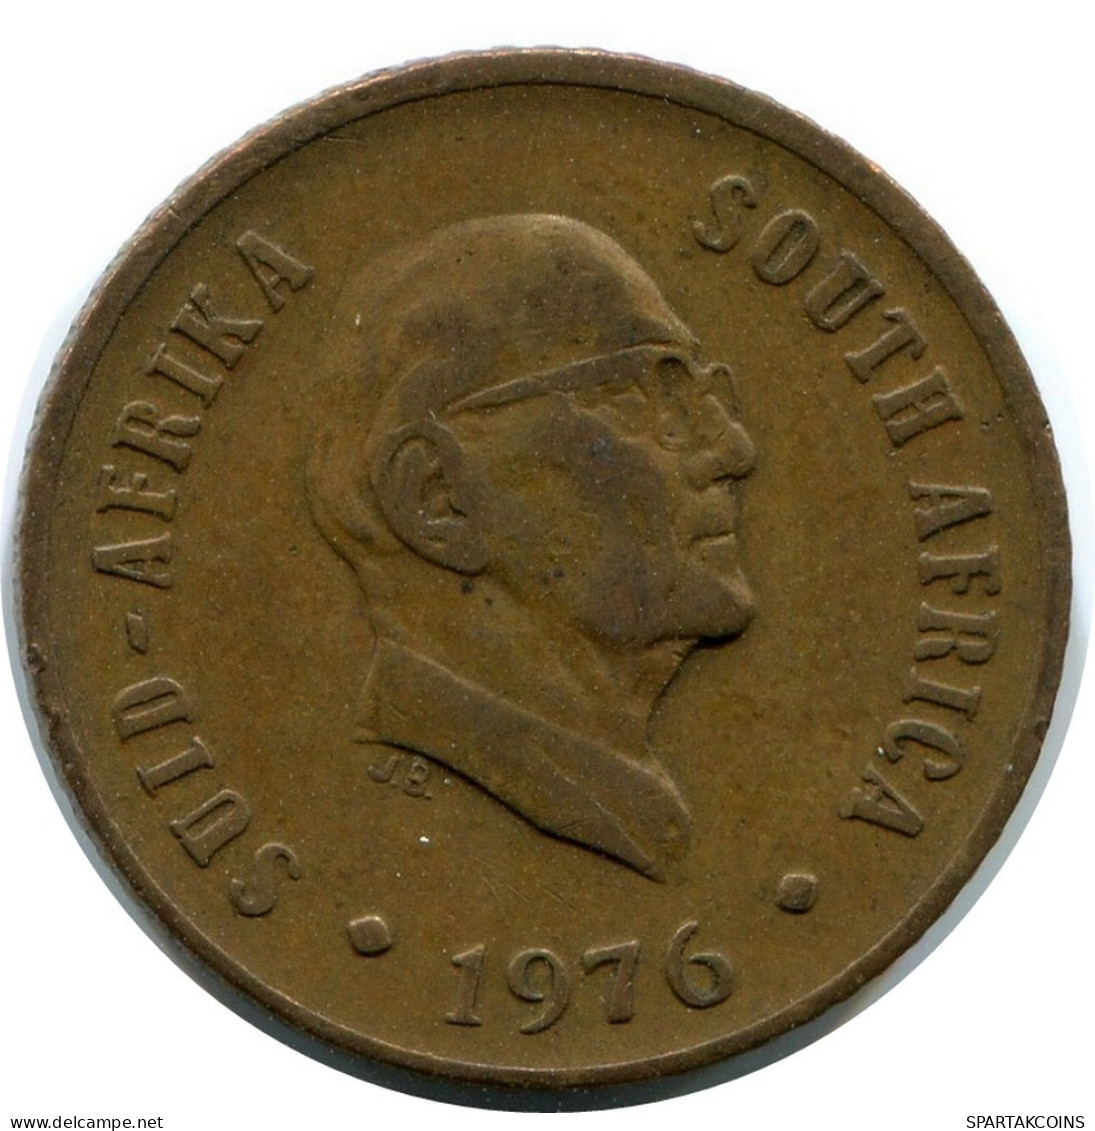 1 CENT 1976 SUDAFRICA SOUTH AFRICA Moneda #AX173.E.A - Zuid-Afrika